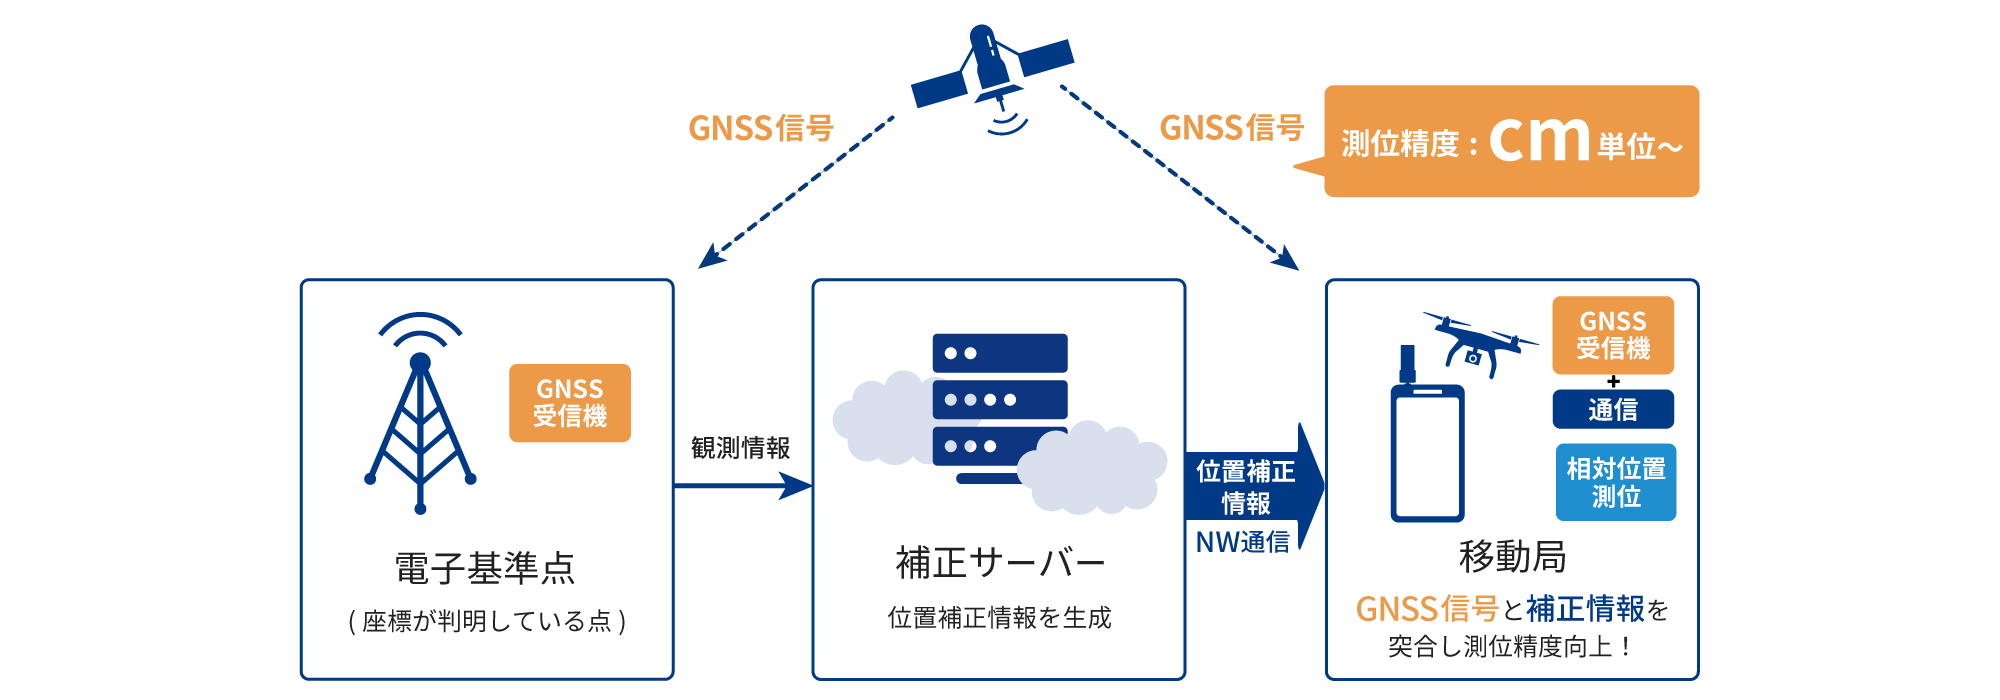 GNSSで取得したデータを補正することで高精度な位置測位を実現するサービスを提供